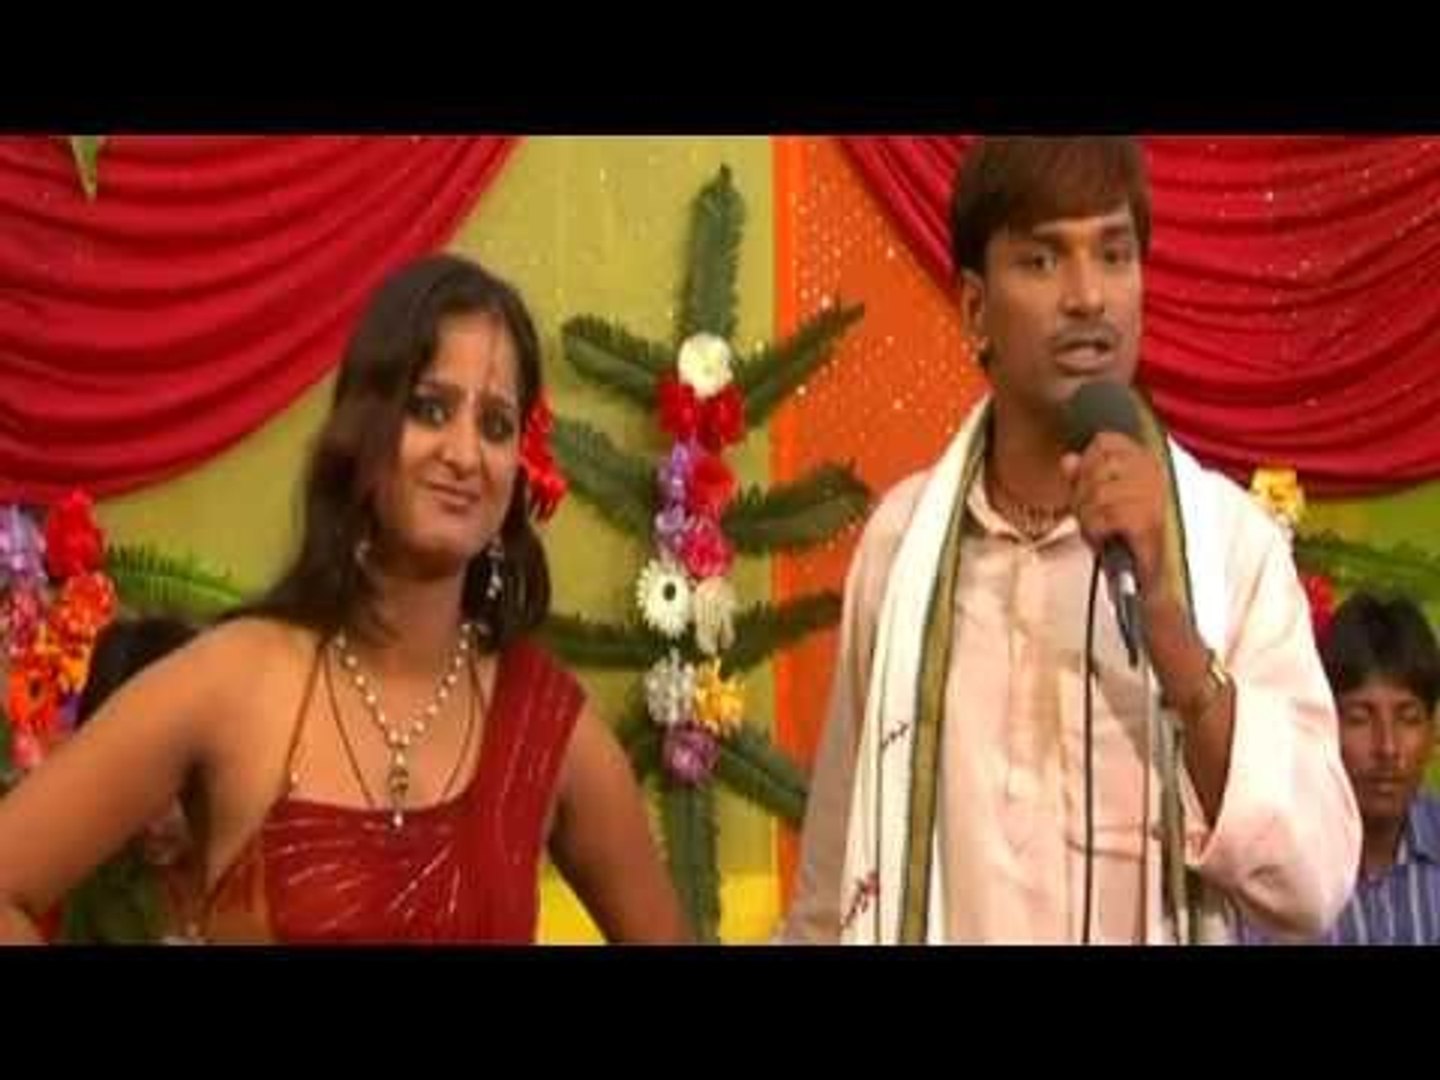 Madhupria Sex - HD à¤ªà¥ˆà¤¸à¤¾ à¤ªà¤° à¤ªà¥à¤¯à¤¾à¤° à¤¦à¥‡à¤¬à¥‚ à¤•à¤¾ - Paisha Par Payar Debu Ka | Bhojpuri Hot & Sexy  Song 2014 - video Dailymotion